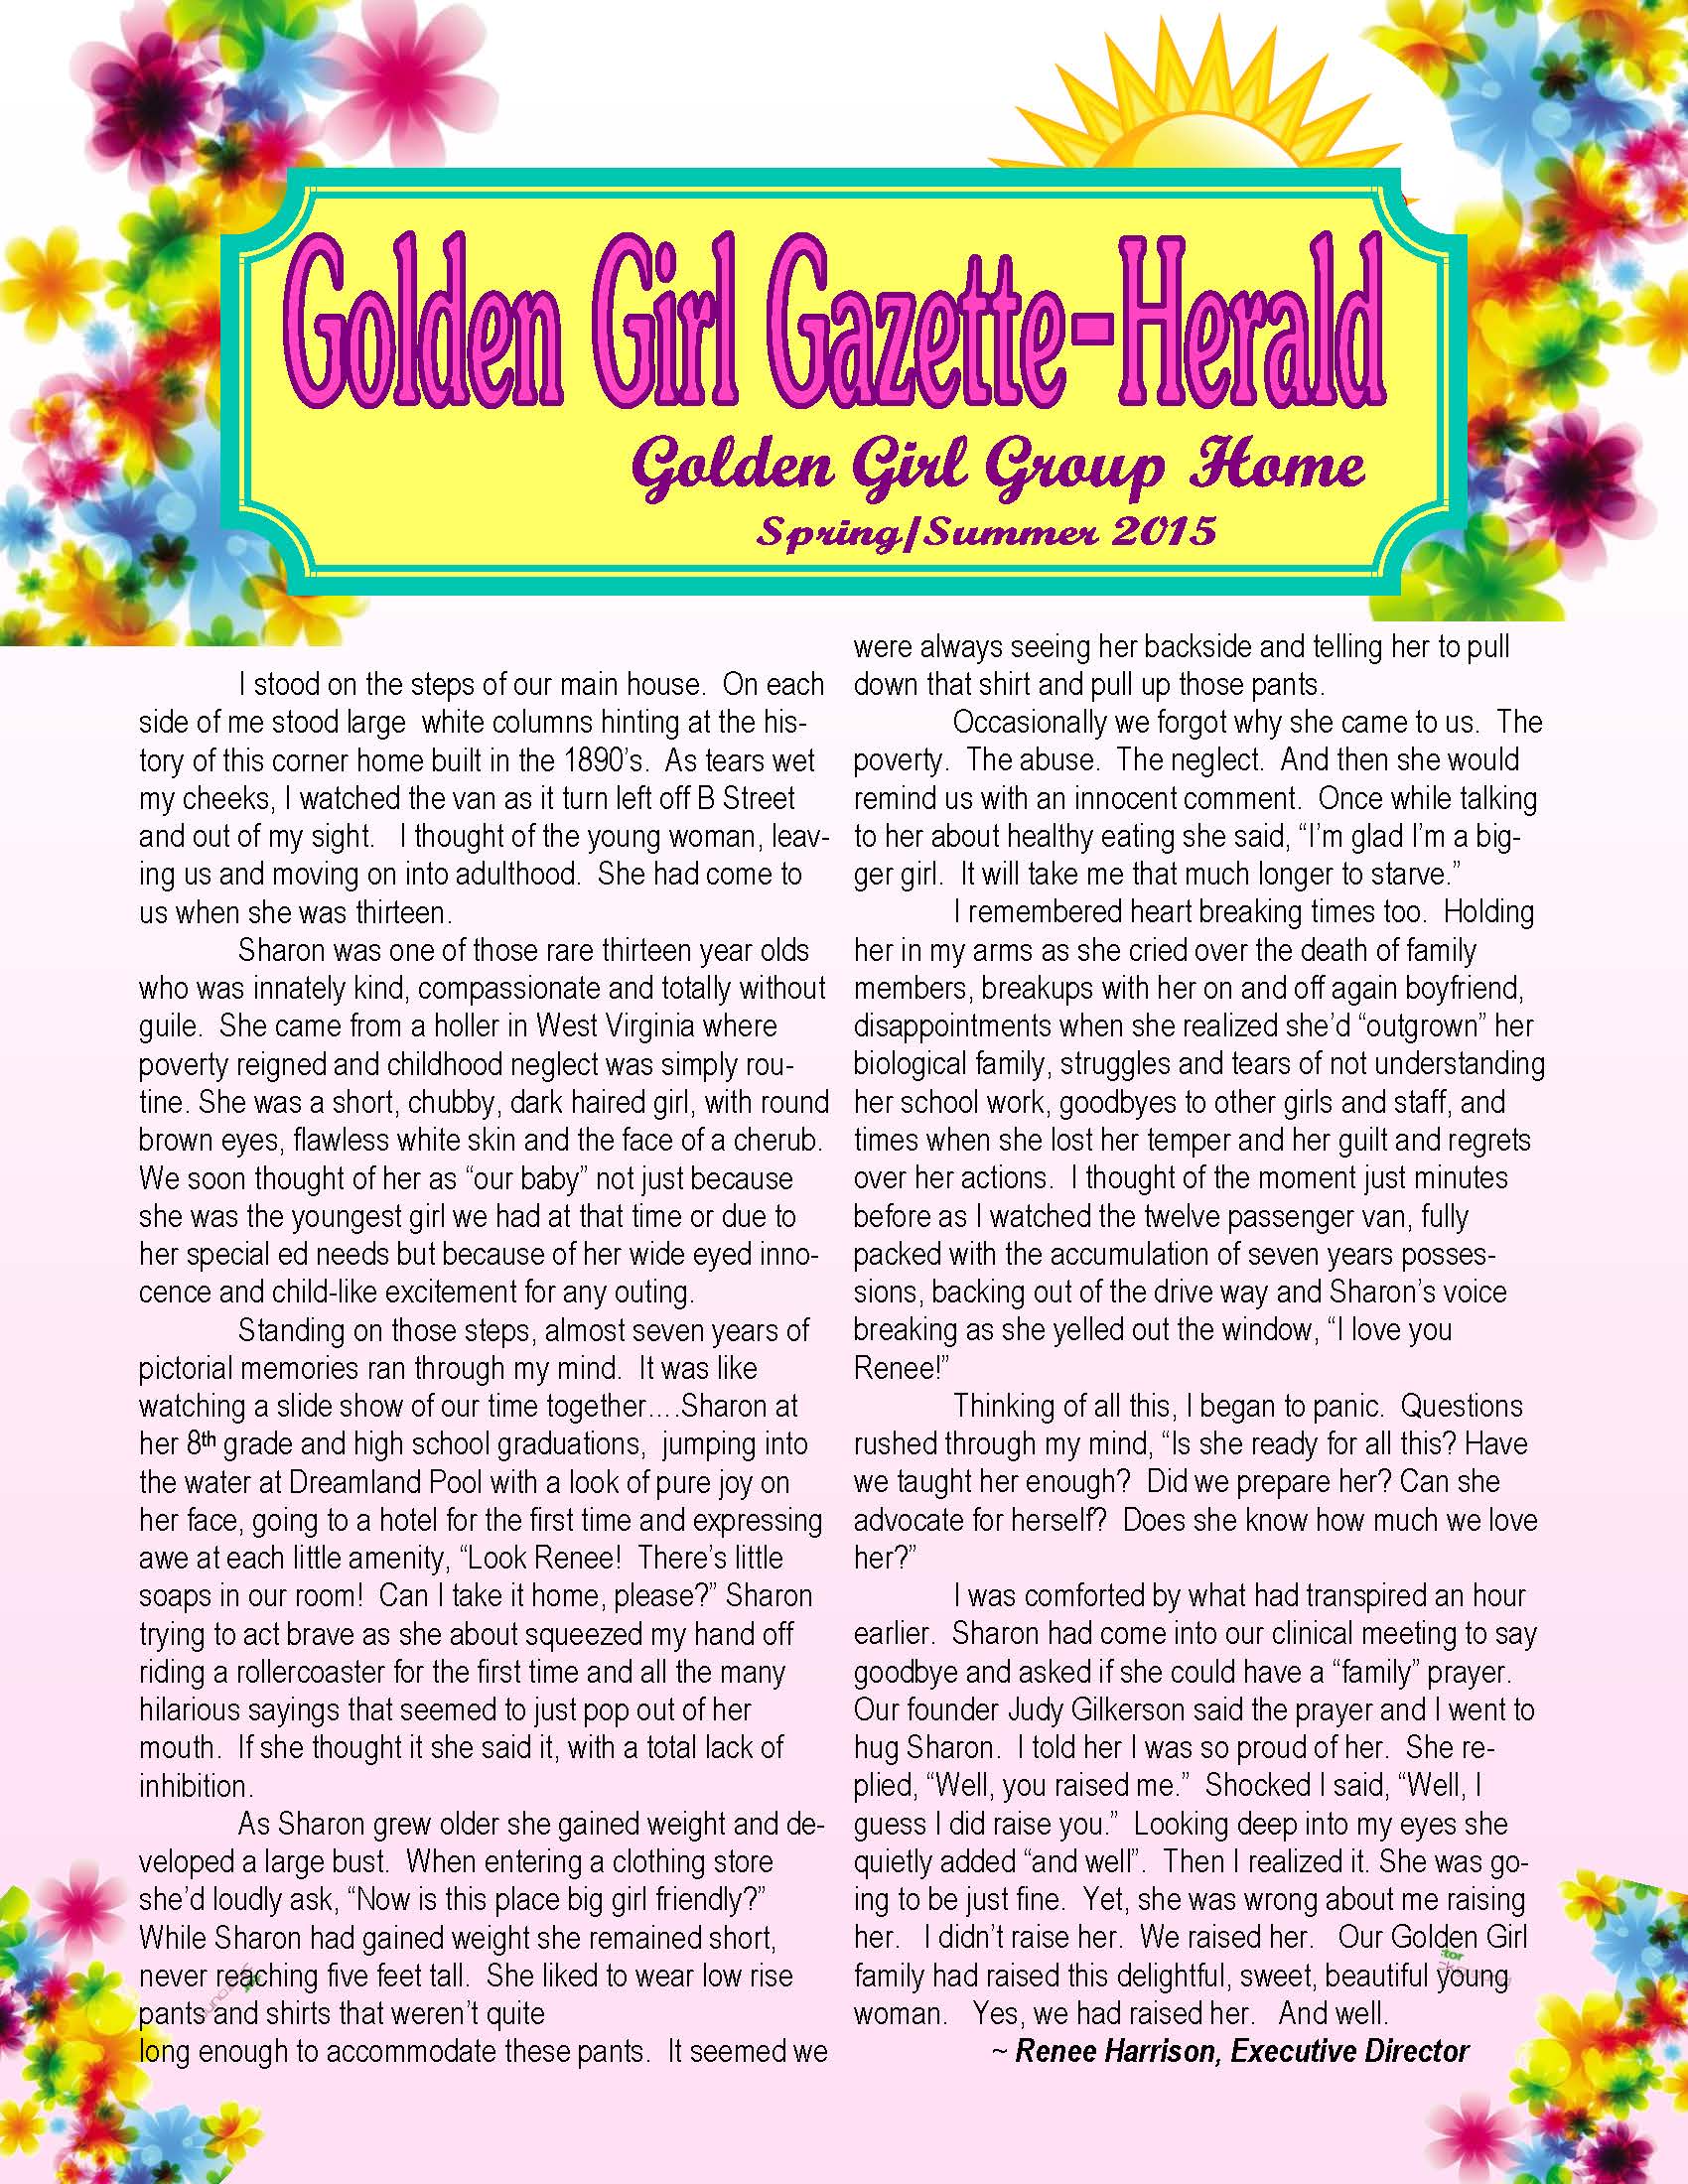 Golden Girl Group Home Newsletter Spring 2015